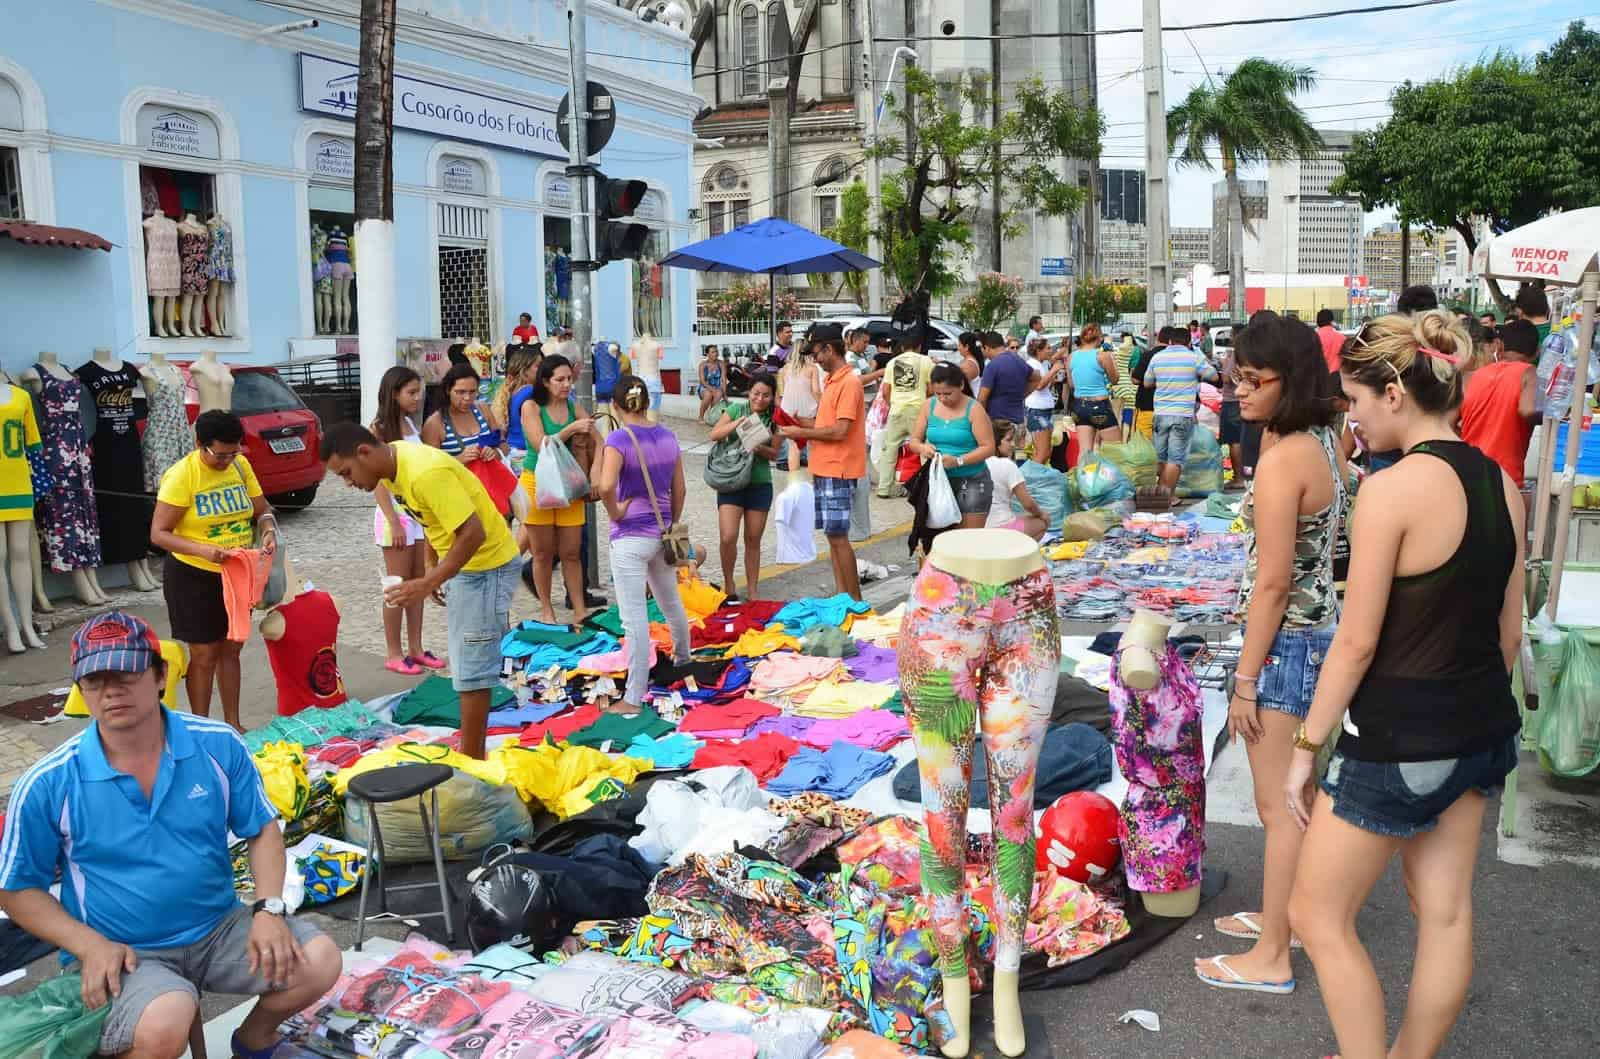 Mercado Central in Fortaleza, Brazil